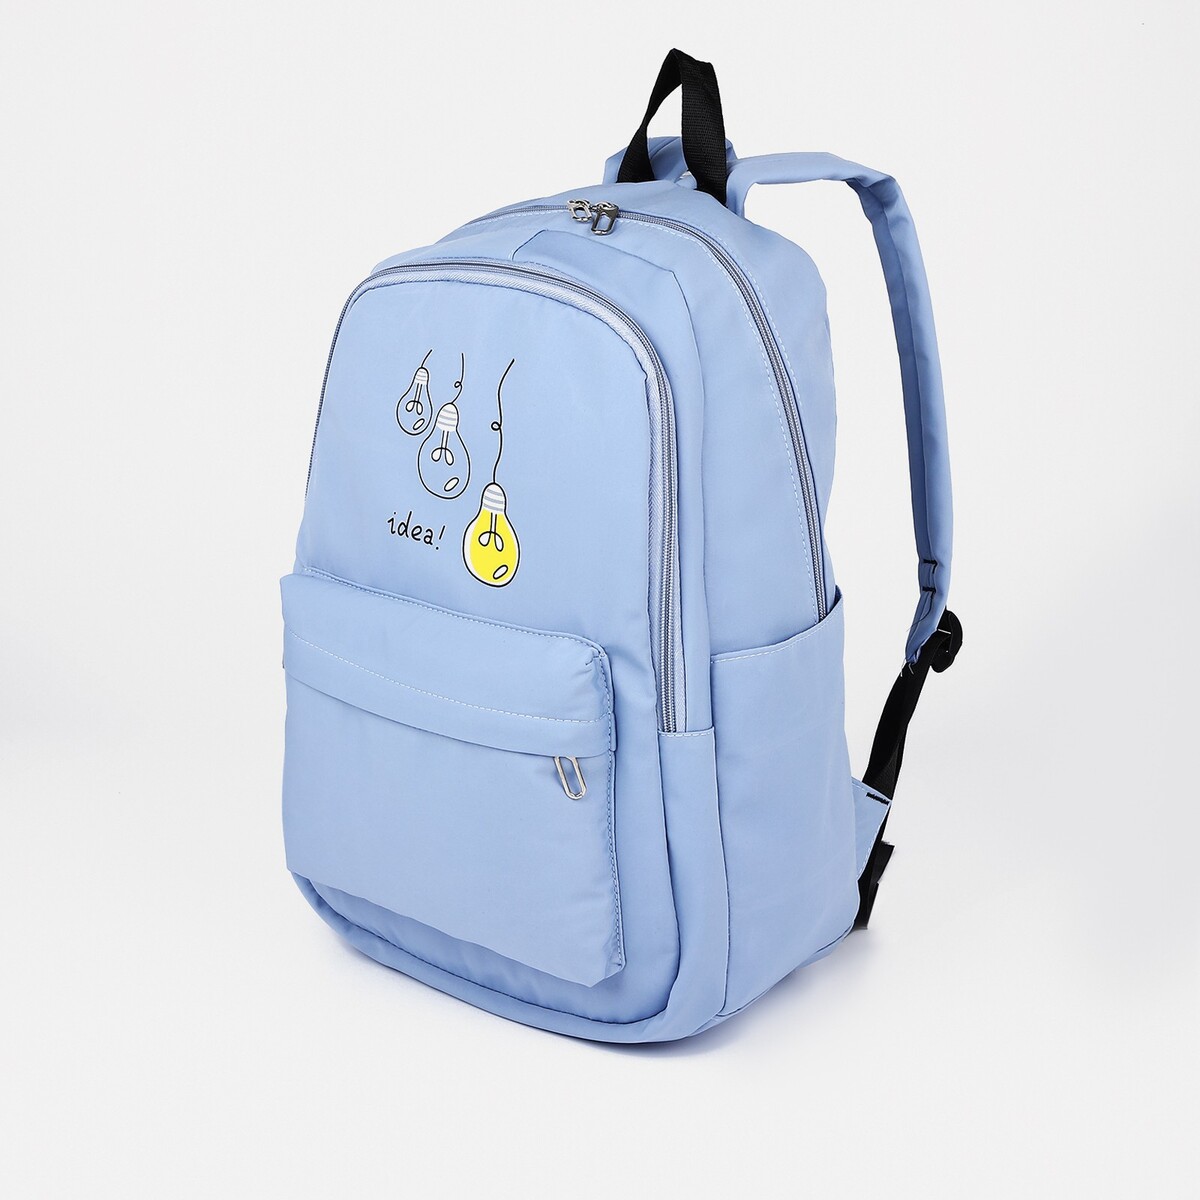 Рюкзак молодежный из текстиля, 2 отдела на молниях, 3 кармана, цвет синий